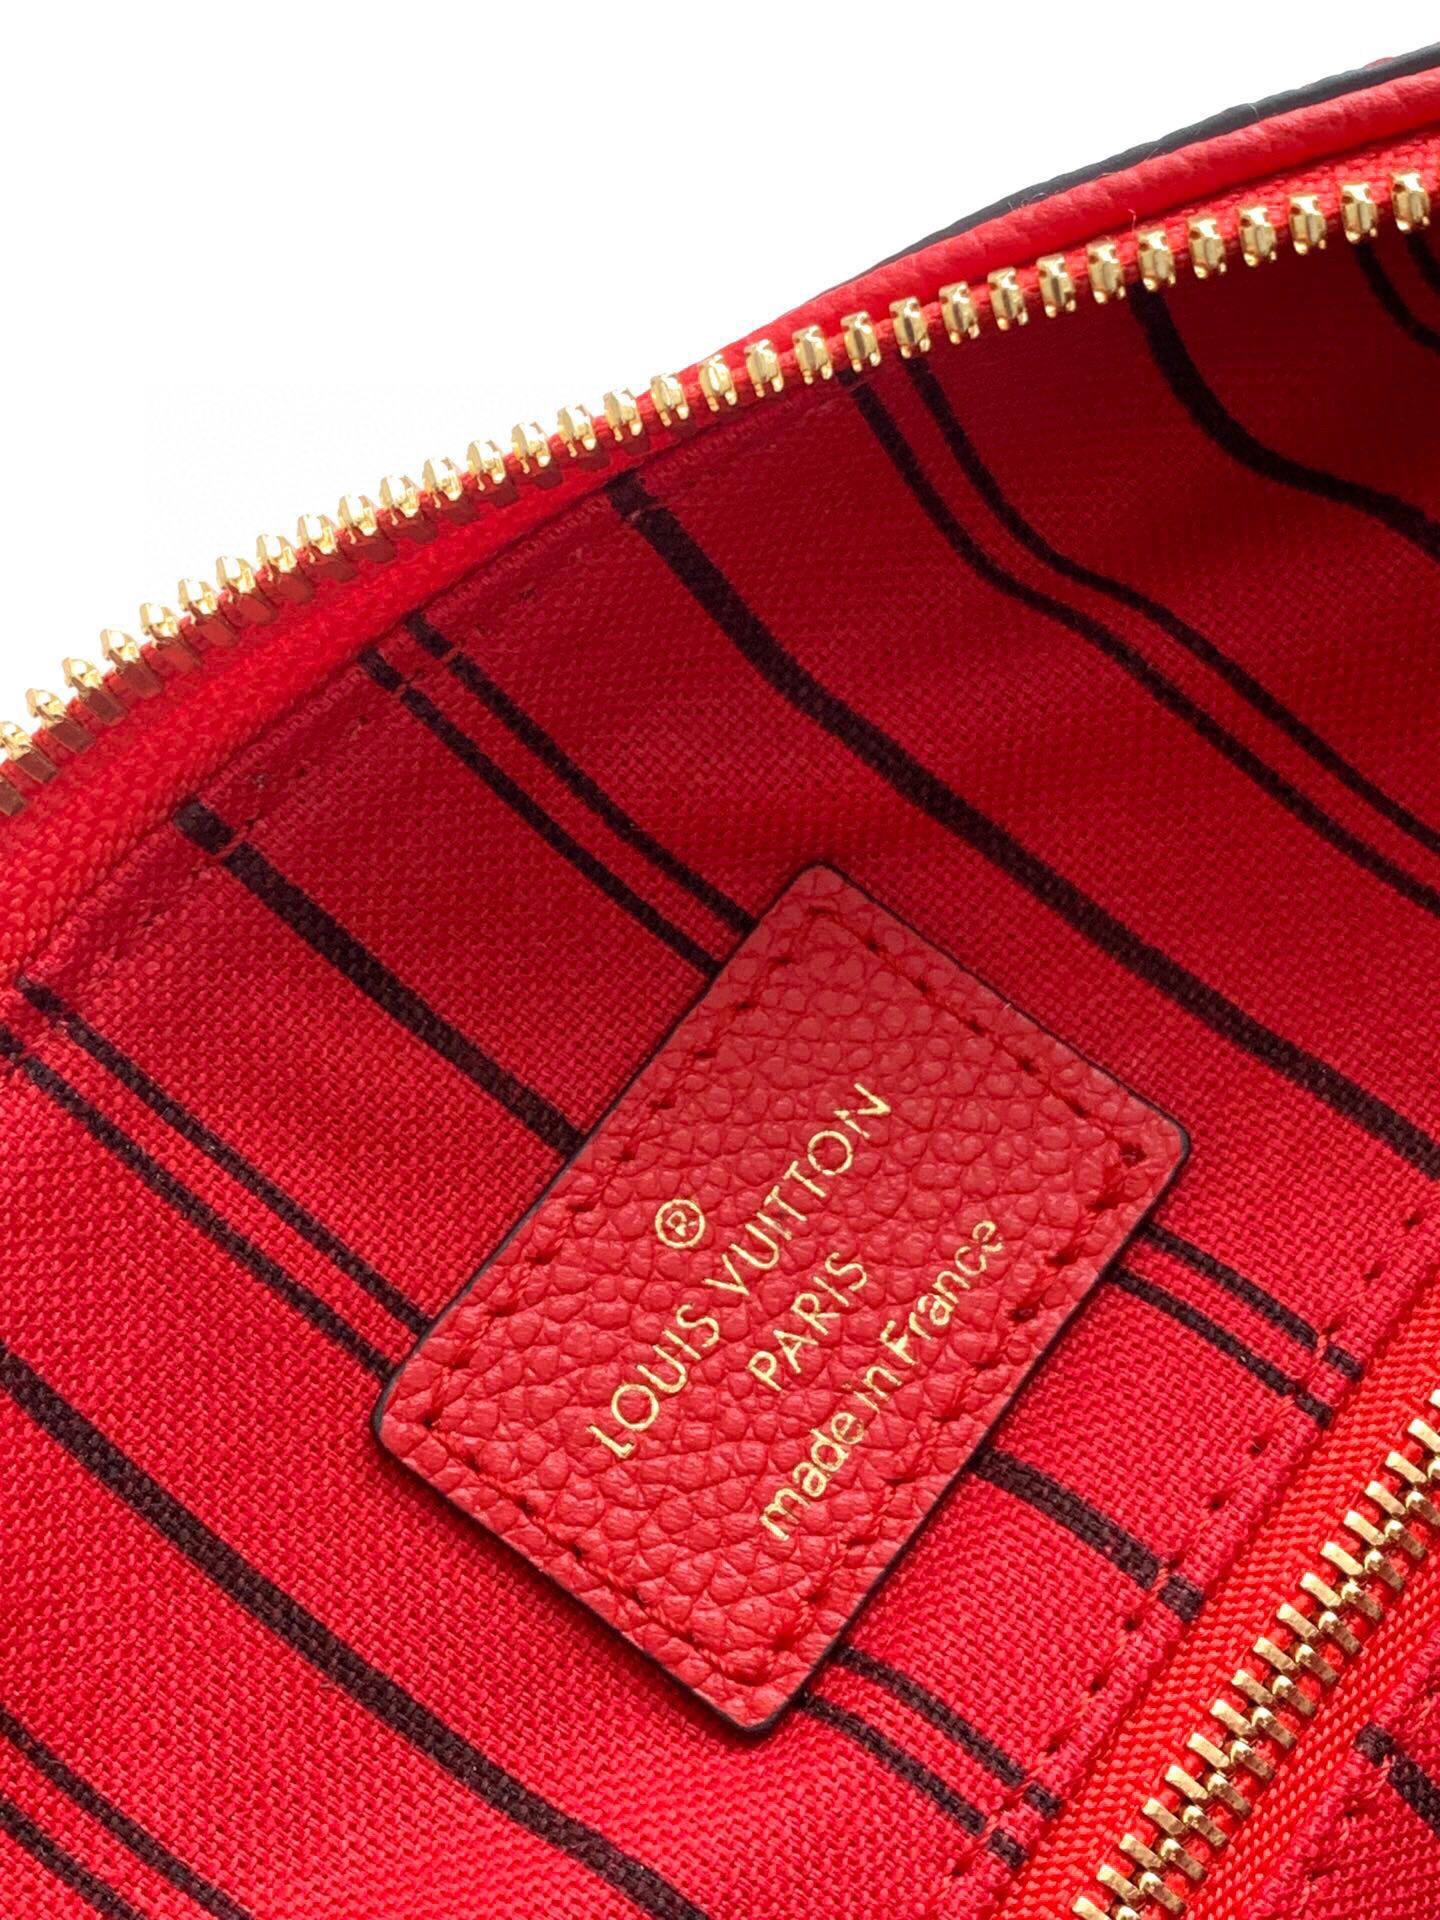 Louis Vuitton Monogram Empreinte Speedy Bandoulier Red M44736